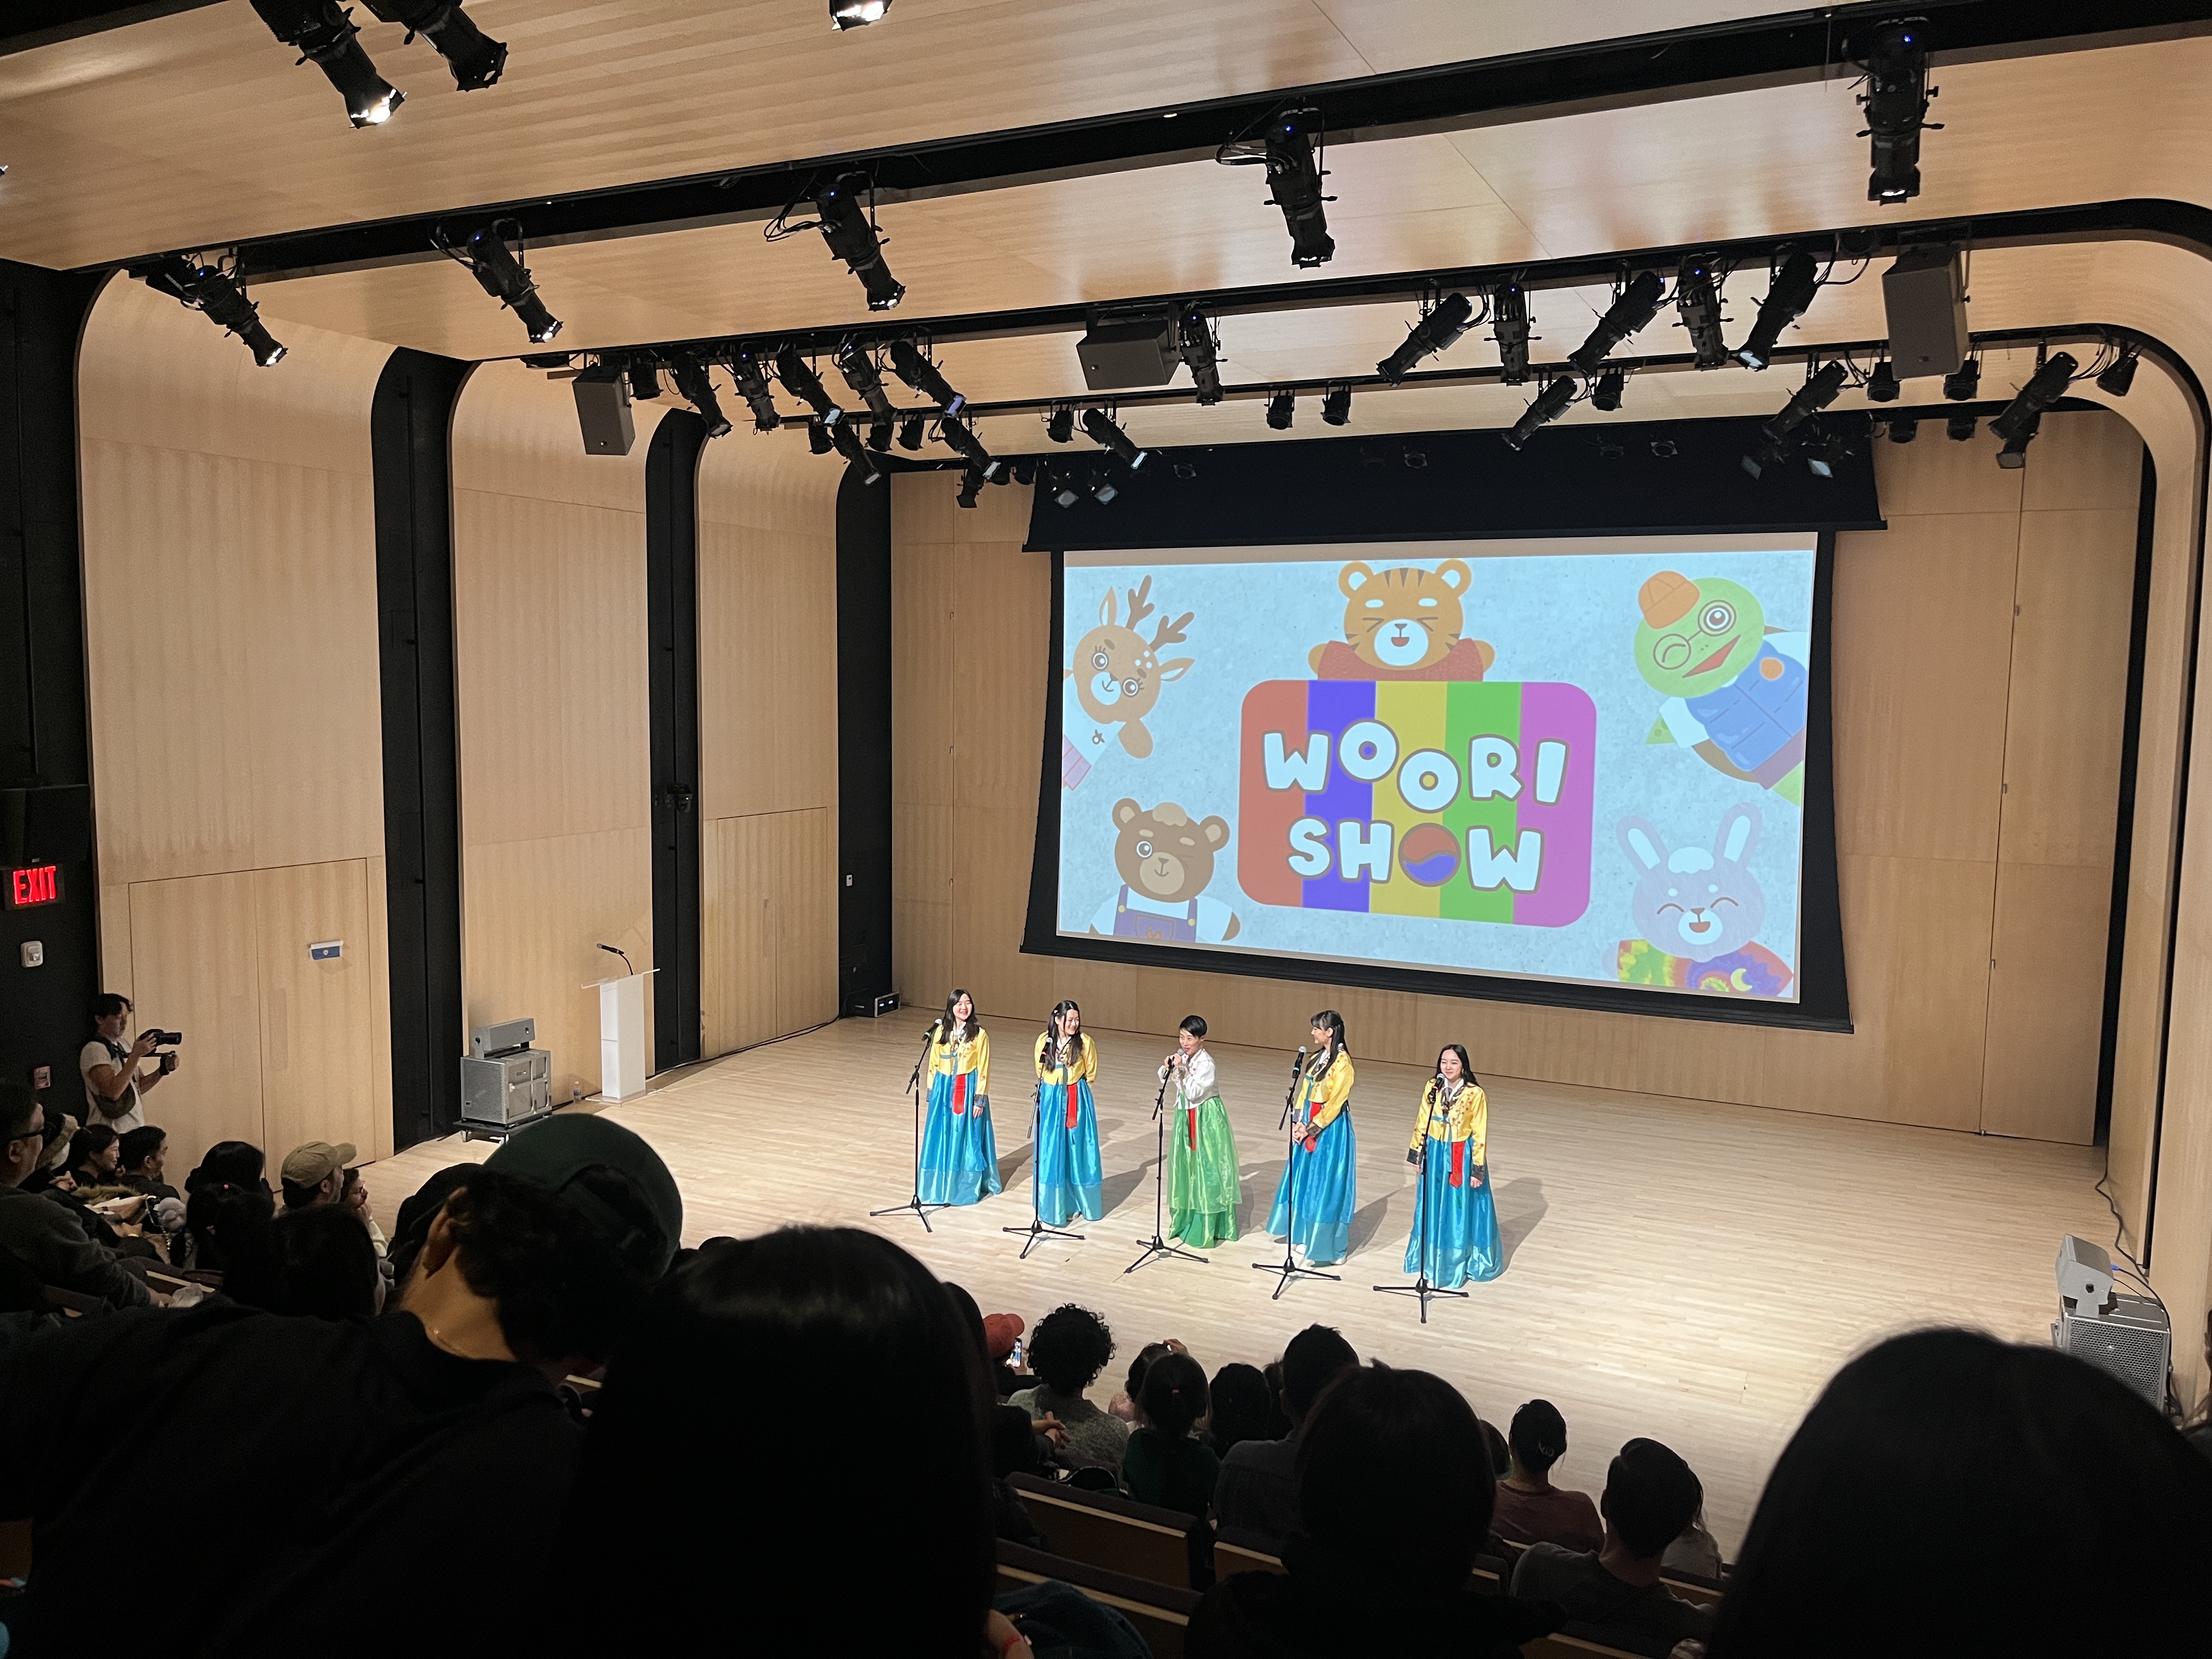 < 설 행사에서 공연을 하는 '우리쇼(Woori Show)' - 출처: 통신원 촬영 >